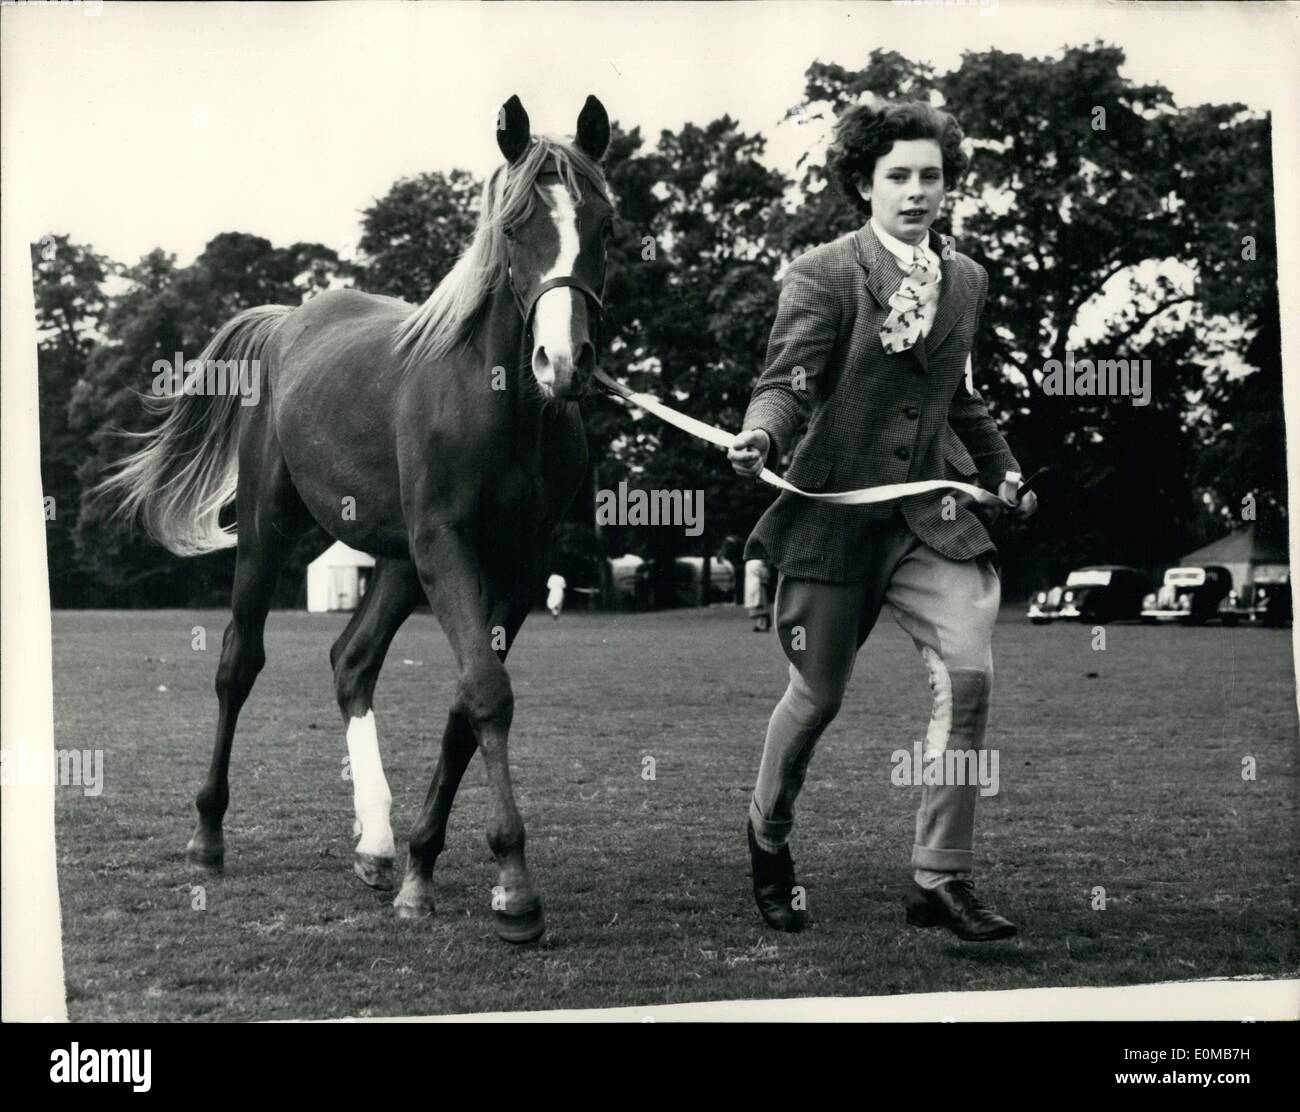 Juillet 07, 1954 - Deux spectacles du Club : les visiteurs à Roehampton Roehampton Club, Putney, aujourd'hui, avait deux spectacles - une pour les chiens et un pour les chevaux. Un All-Saluki fut le premier dog show qui aura lieu dans ce pays depuis près de trente ans - c'est organisé par le Saluki Gazelle ou Hound Club. L'autre dispose de 200 chevaux arabes et est exécuté par le Cheval Arabe de la société. Photo montre Ann, Mounsey-Weysham de Carlisle, vu avec son cheval ''Sombre souveraine, un an. Banque D'Images